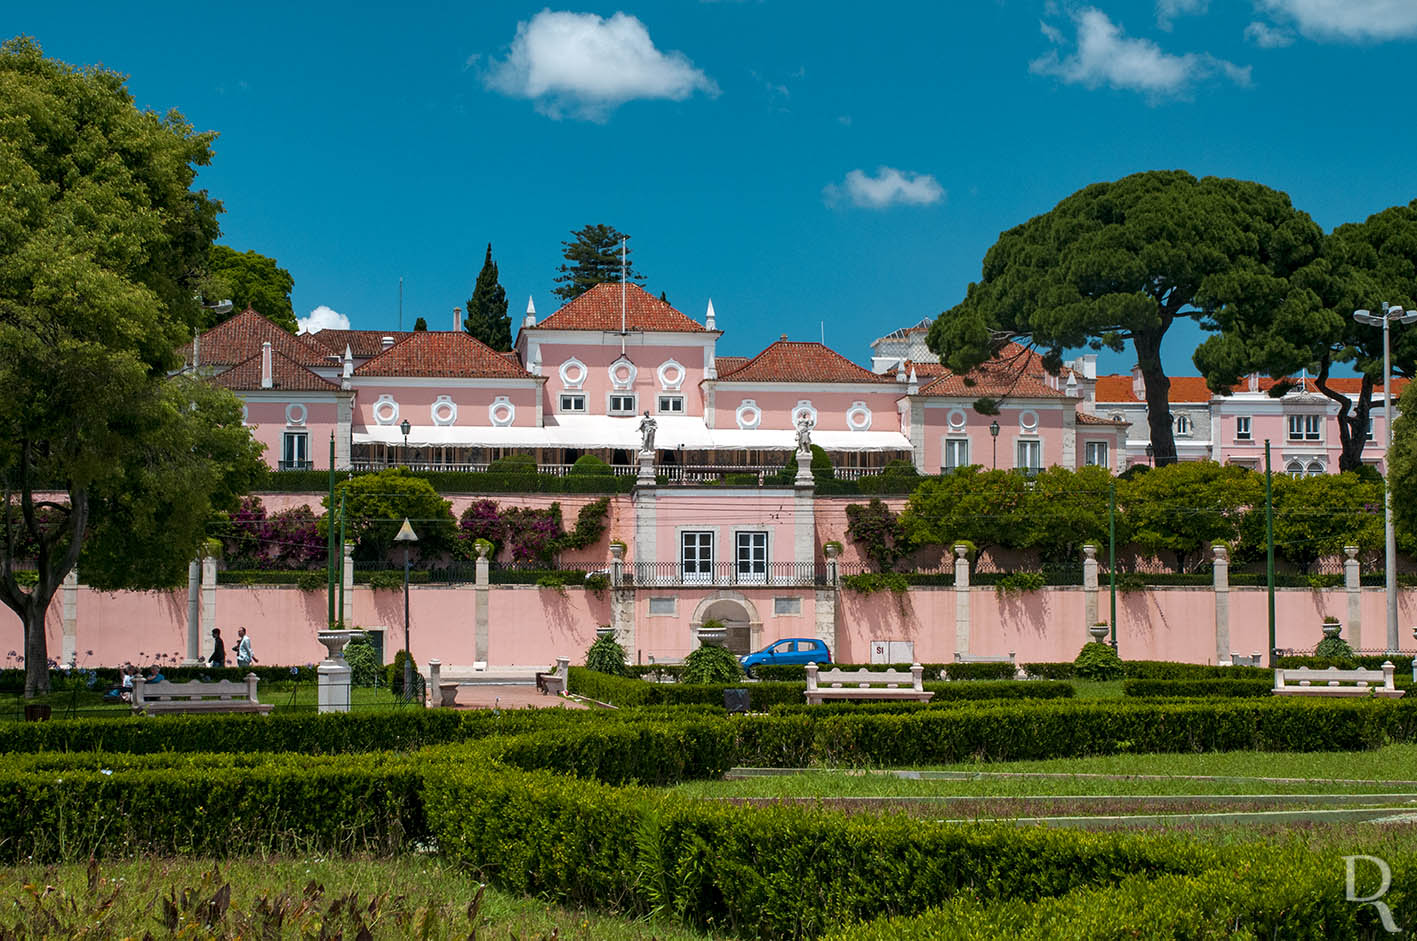 Palcio de Belm / The Portuguese White House Is ... Pink